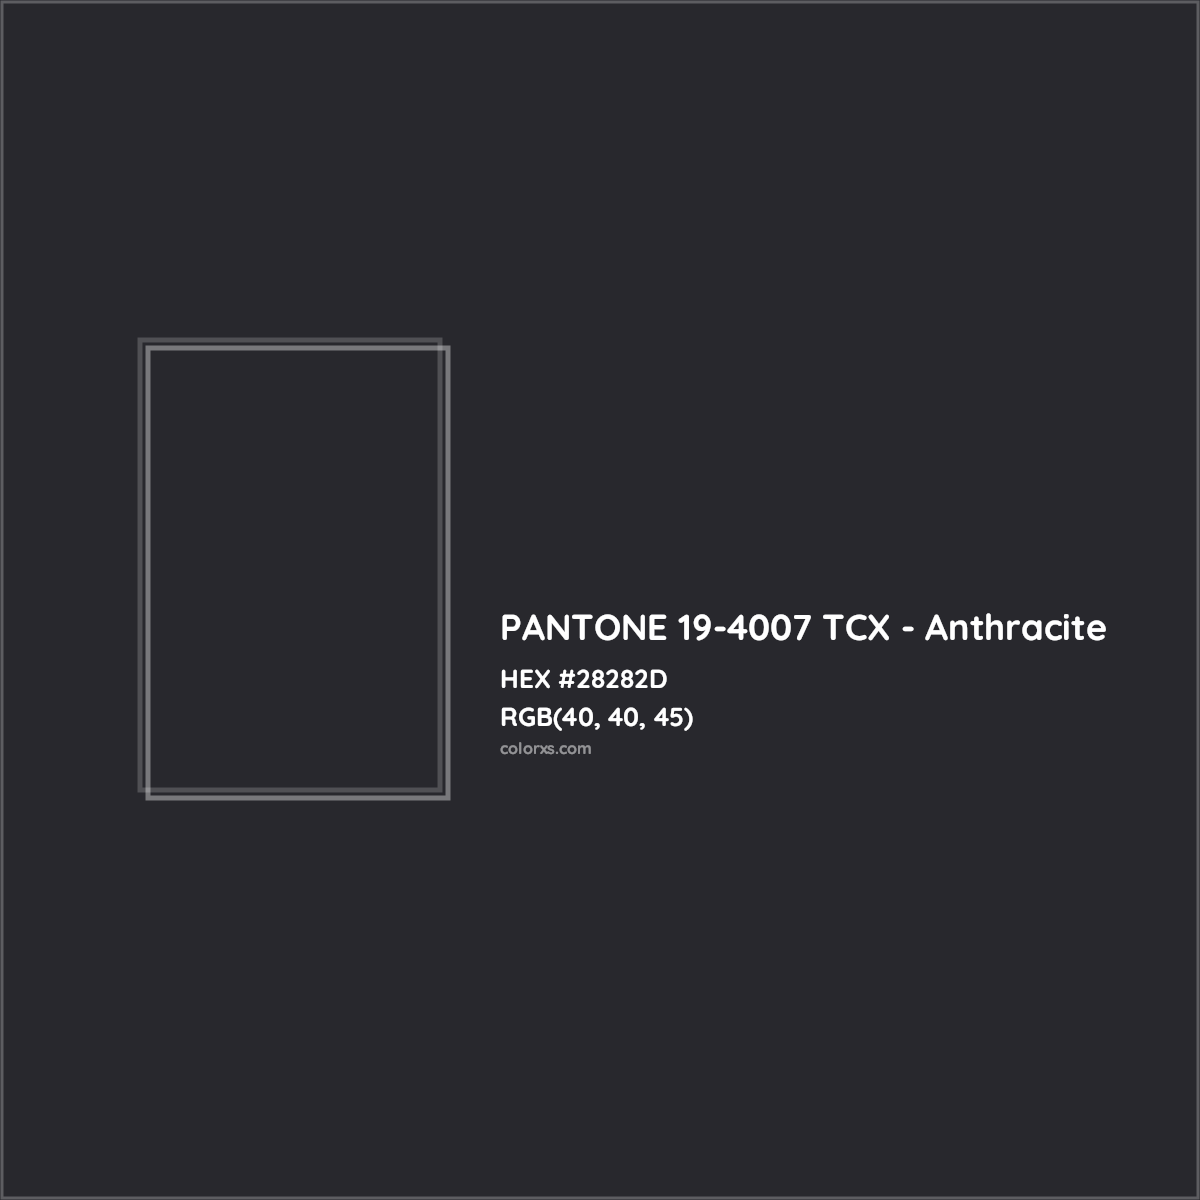 HEX #28282D PANTONE 19-4007 TCX - Anthracite CMS Pantone TCX - Color Code